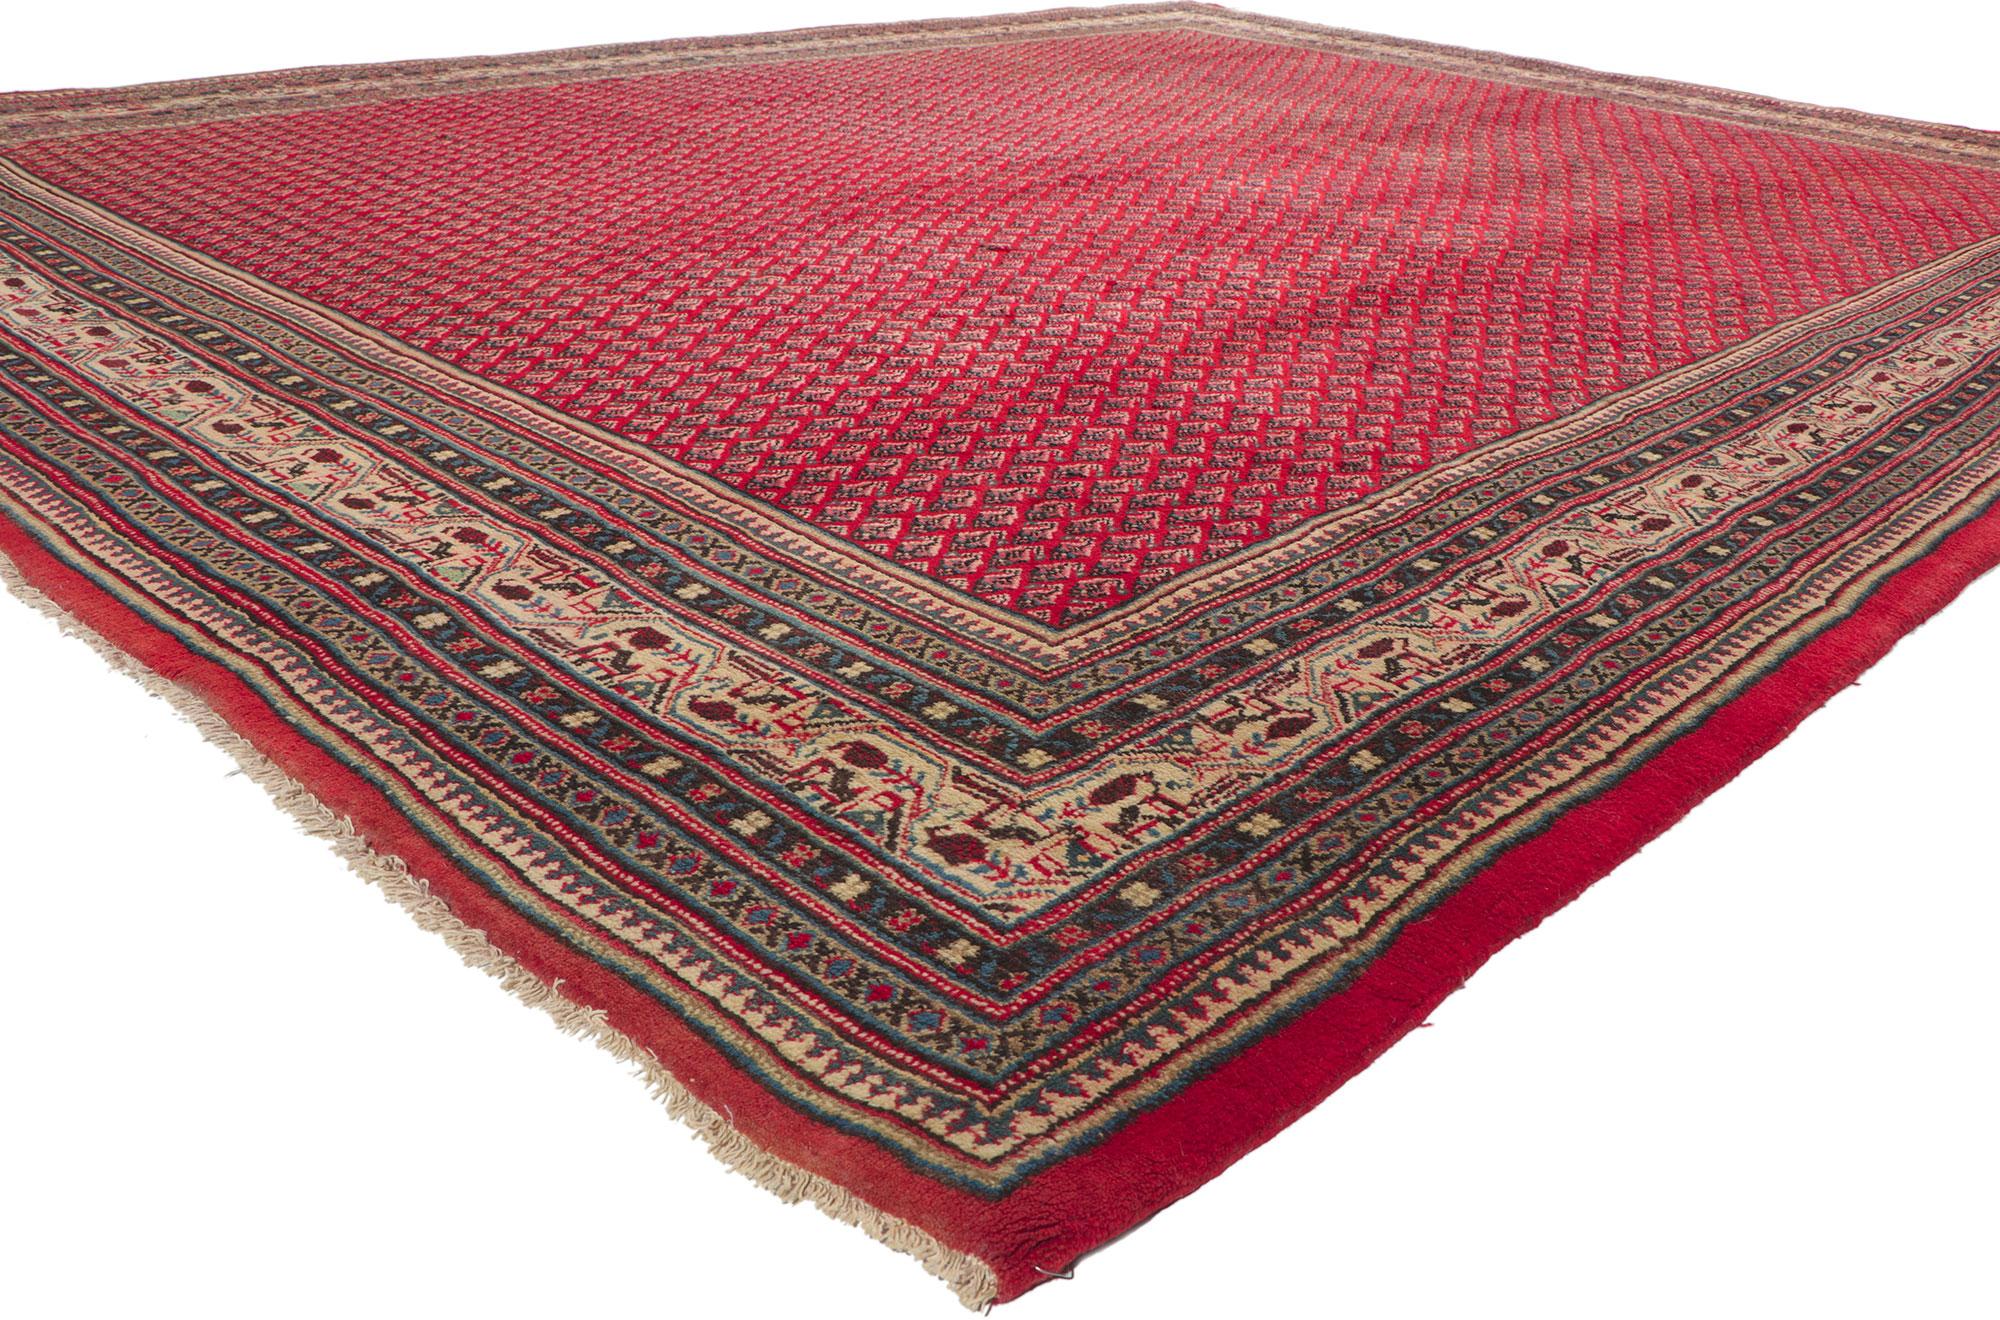 75894 Vintage Persian Mahal Teppich, 10'03 X 13'05. Dieser handgeknüpfte persische Mahal-Teppich aus Wolle im Vintage-Stil besticht durch zeitlosen Stil, unglaubliche Details und Textur. Das komplizierte geometrische Design und die raffinierte